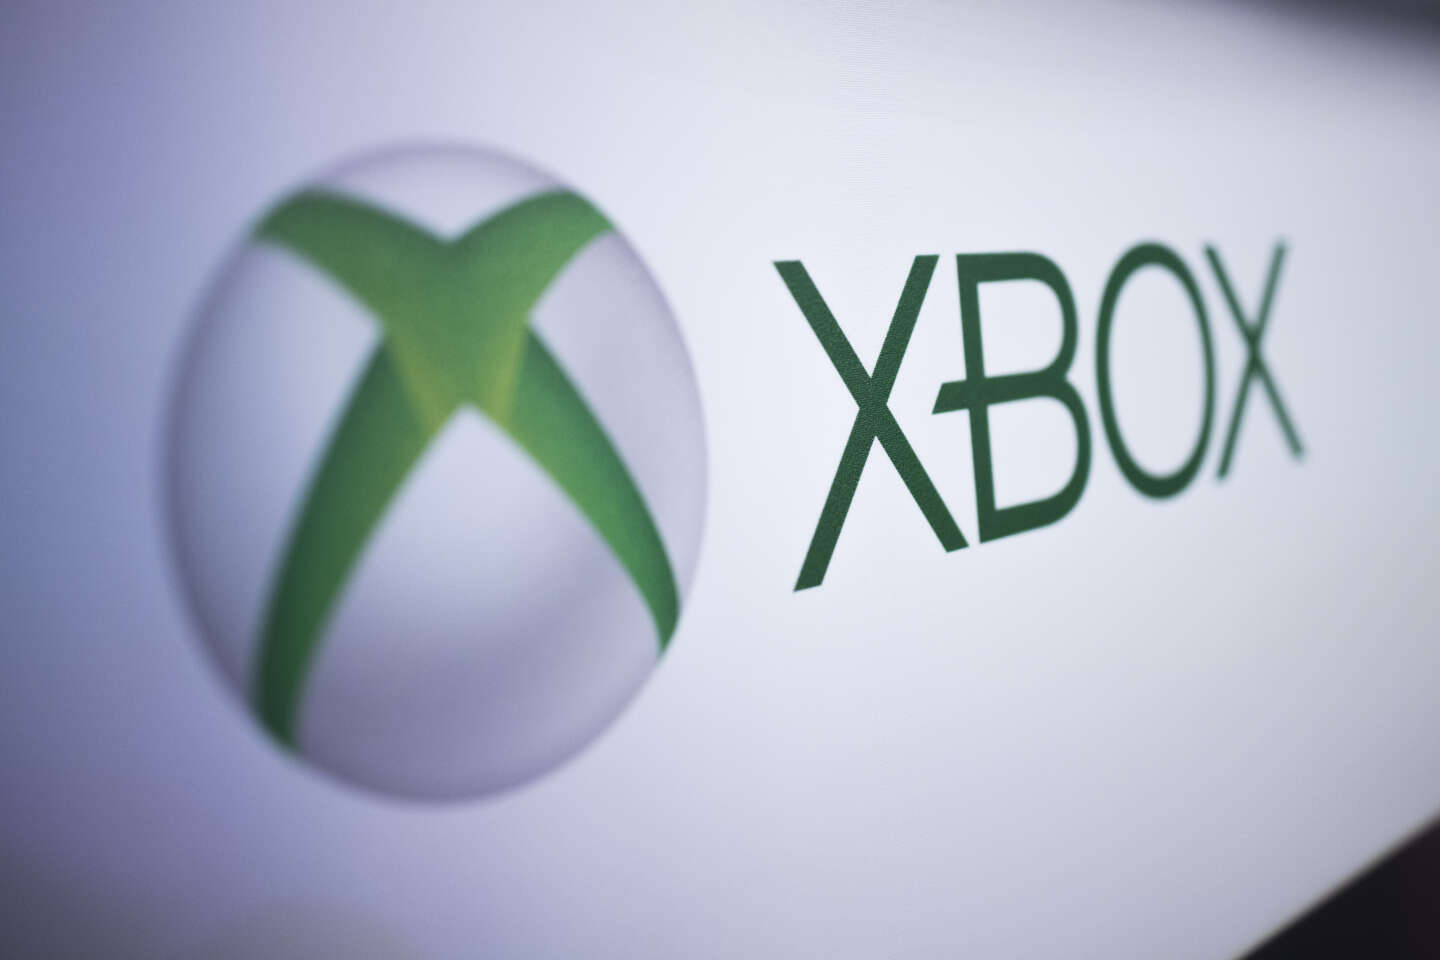 Regarder la vidéo Xbox publie par erreur en ligne des informations confidentielles internes